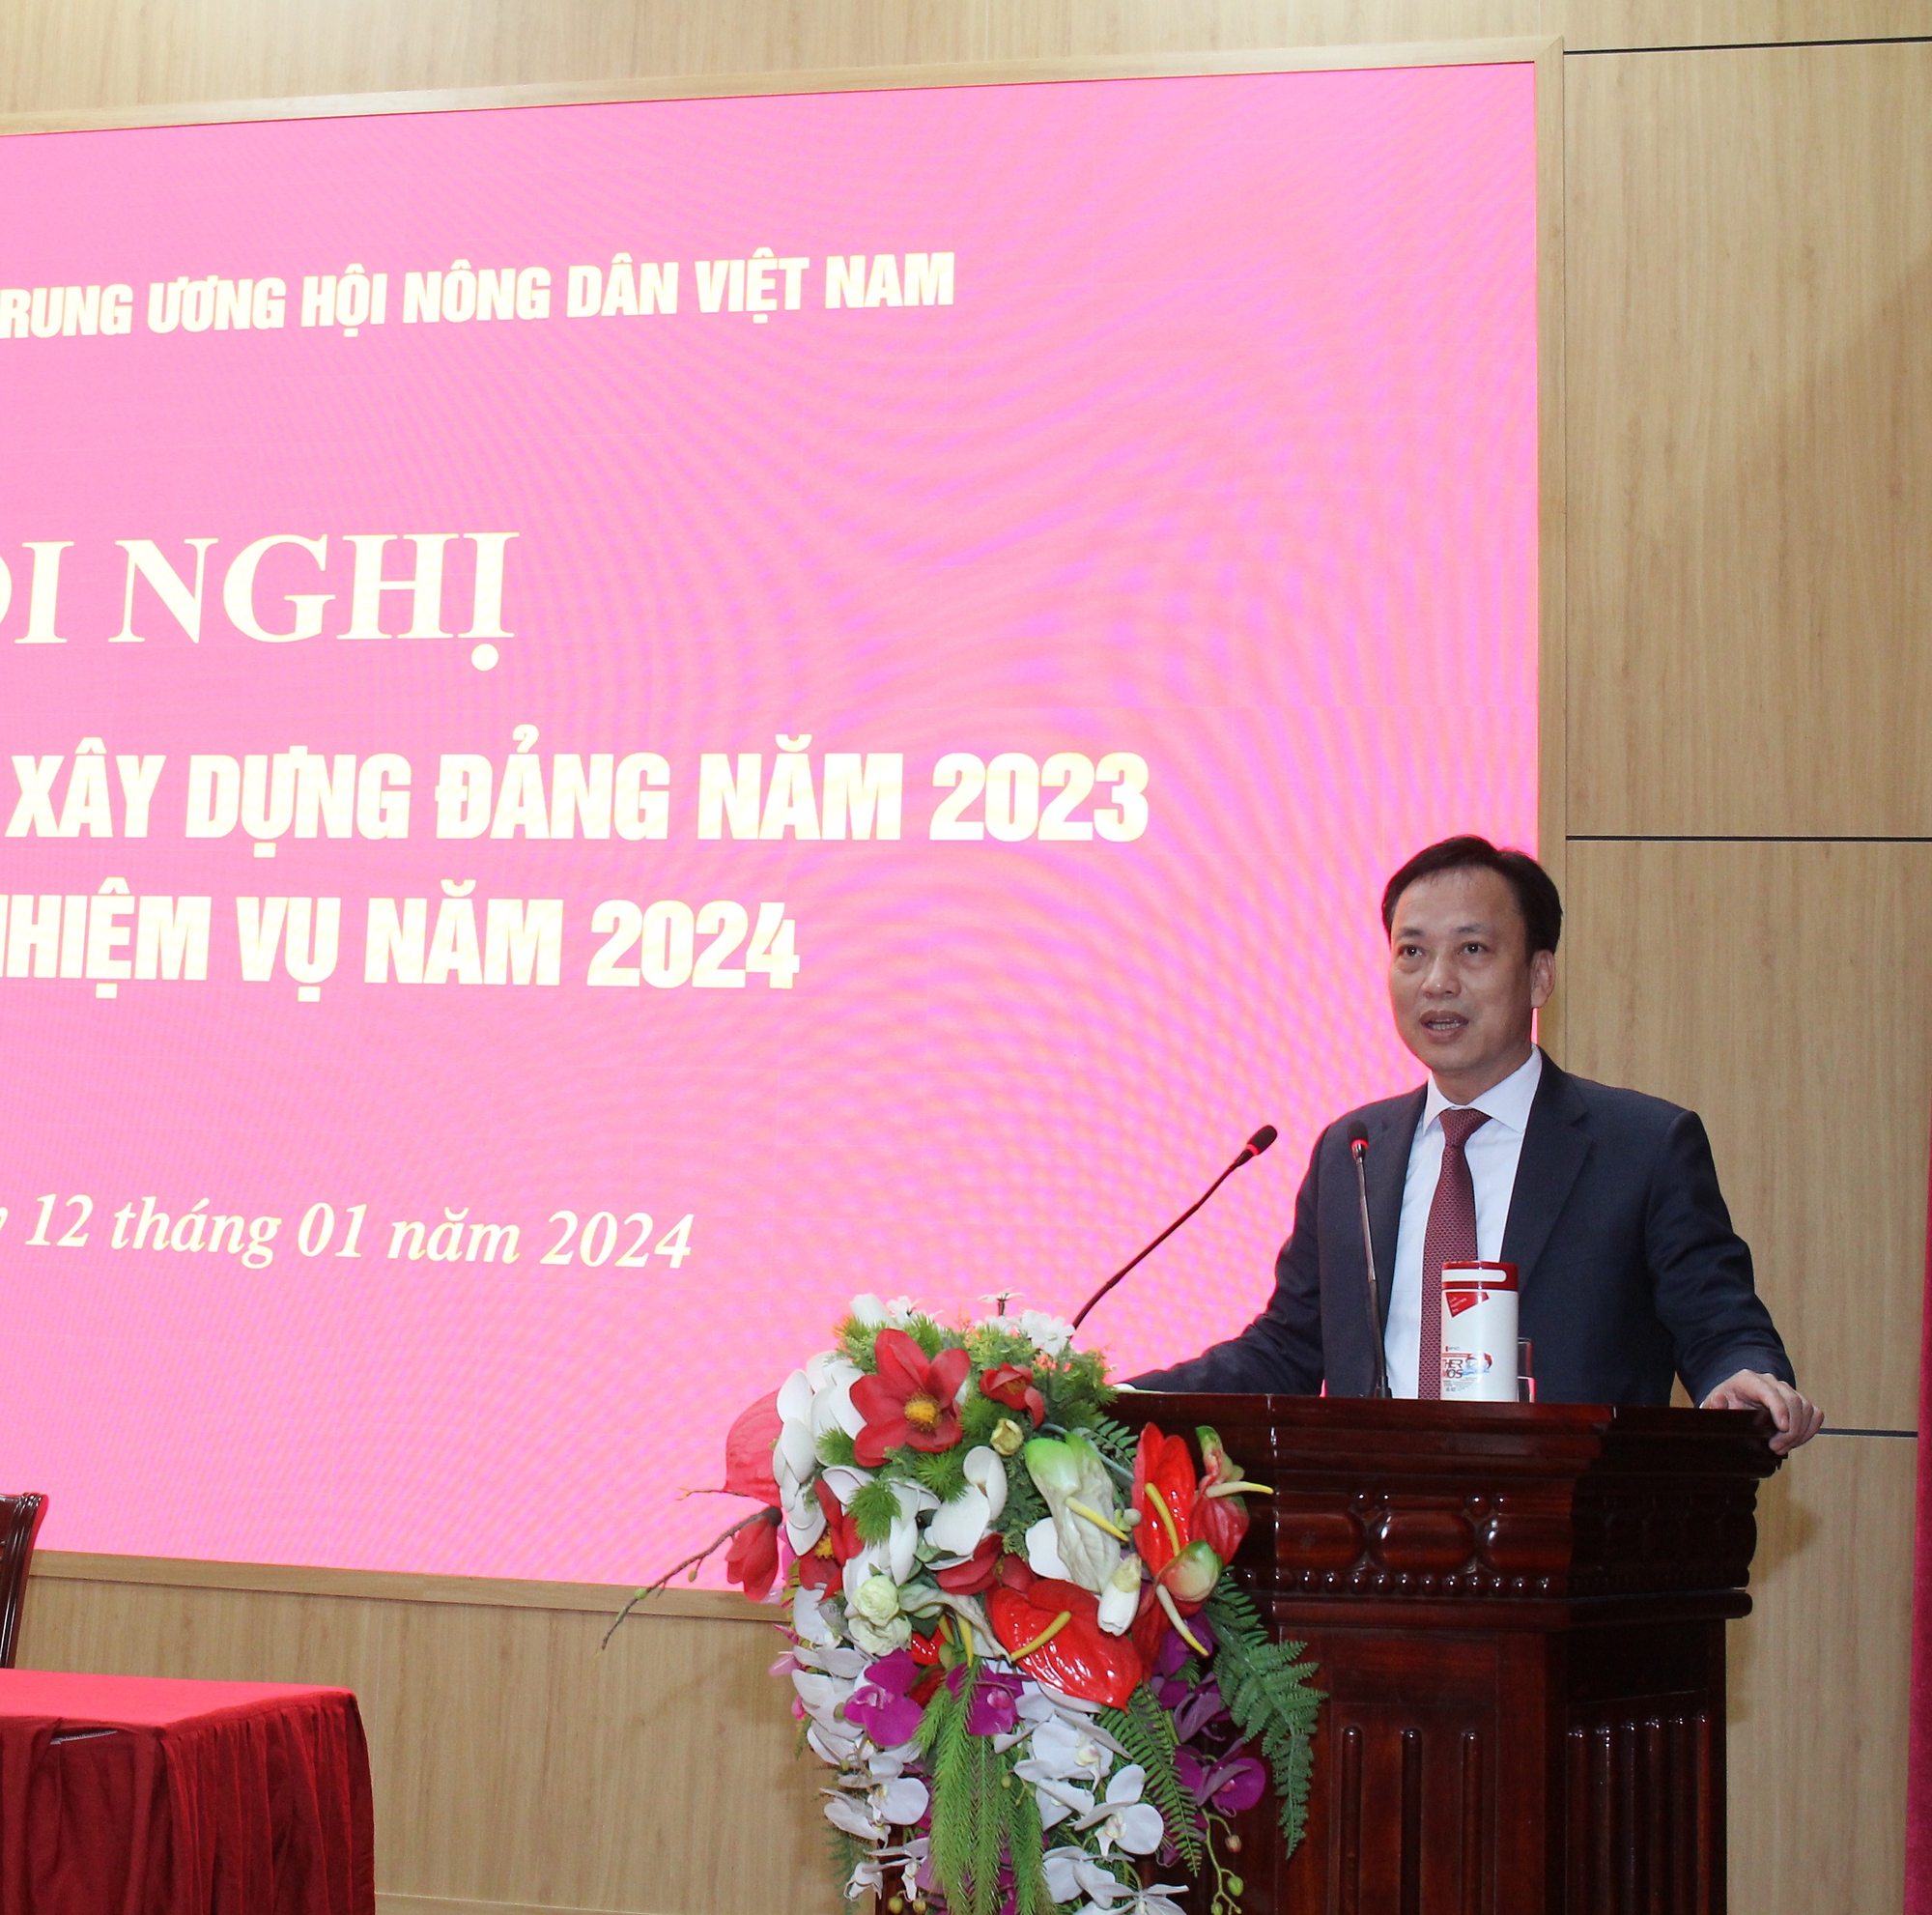 Đảng bộ cơ quan T.Ư Hội Nông dân Việt Nam tổng kết công tác xây dựng Đảng năm 2023, triển khai nhiệm vụ năm 2024- Ảnh 4.